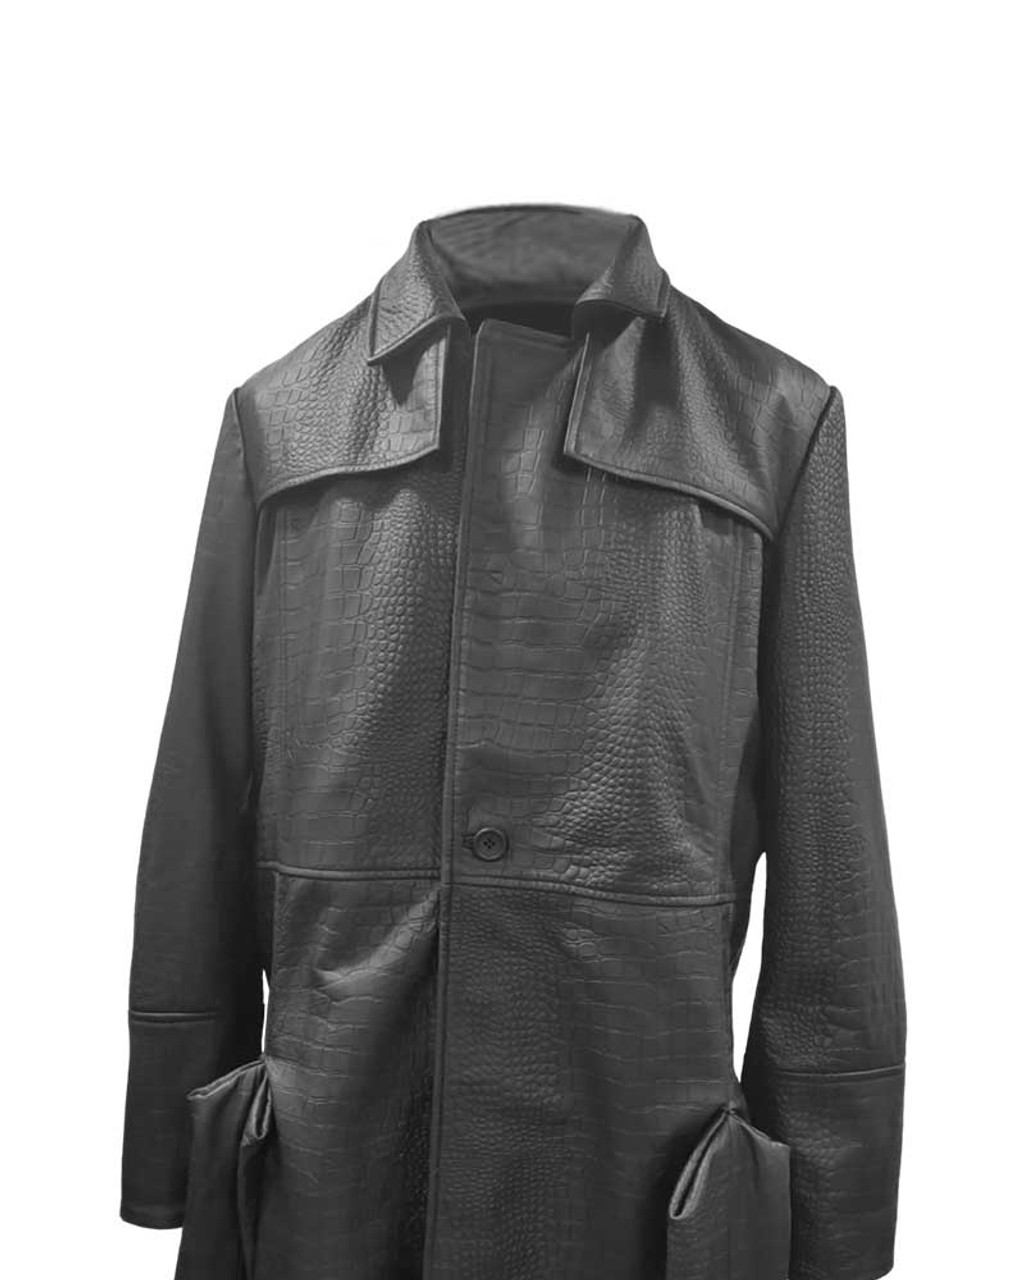 The Matrix Morpheus Alligator Leather Coat | CLJ